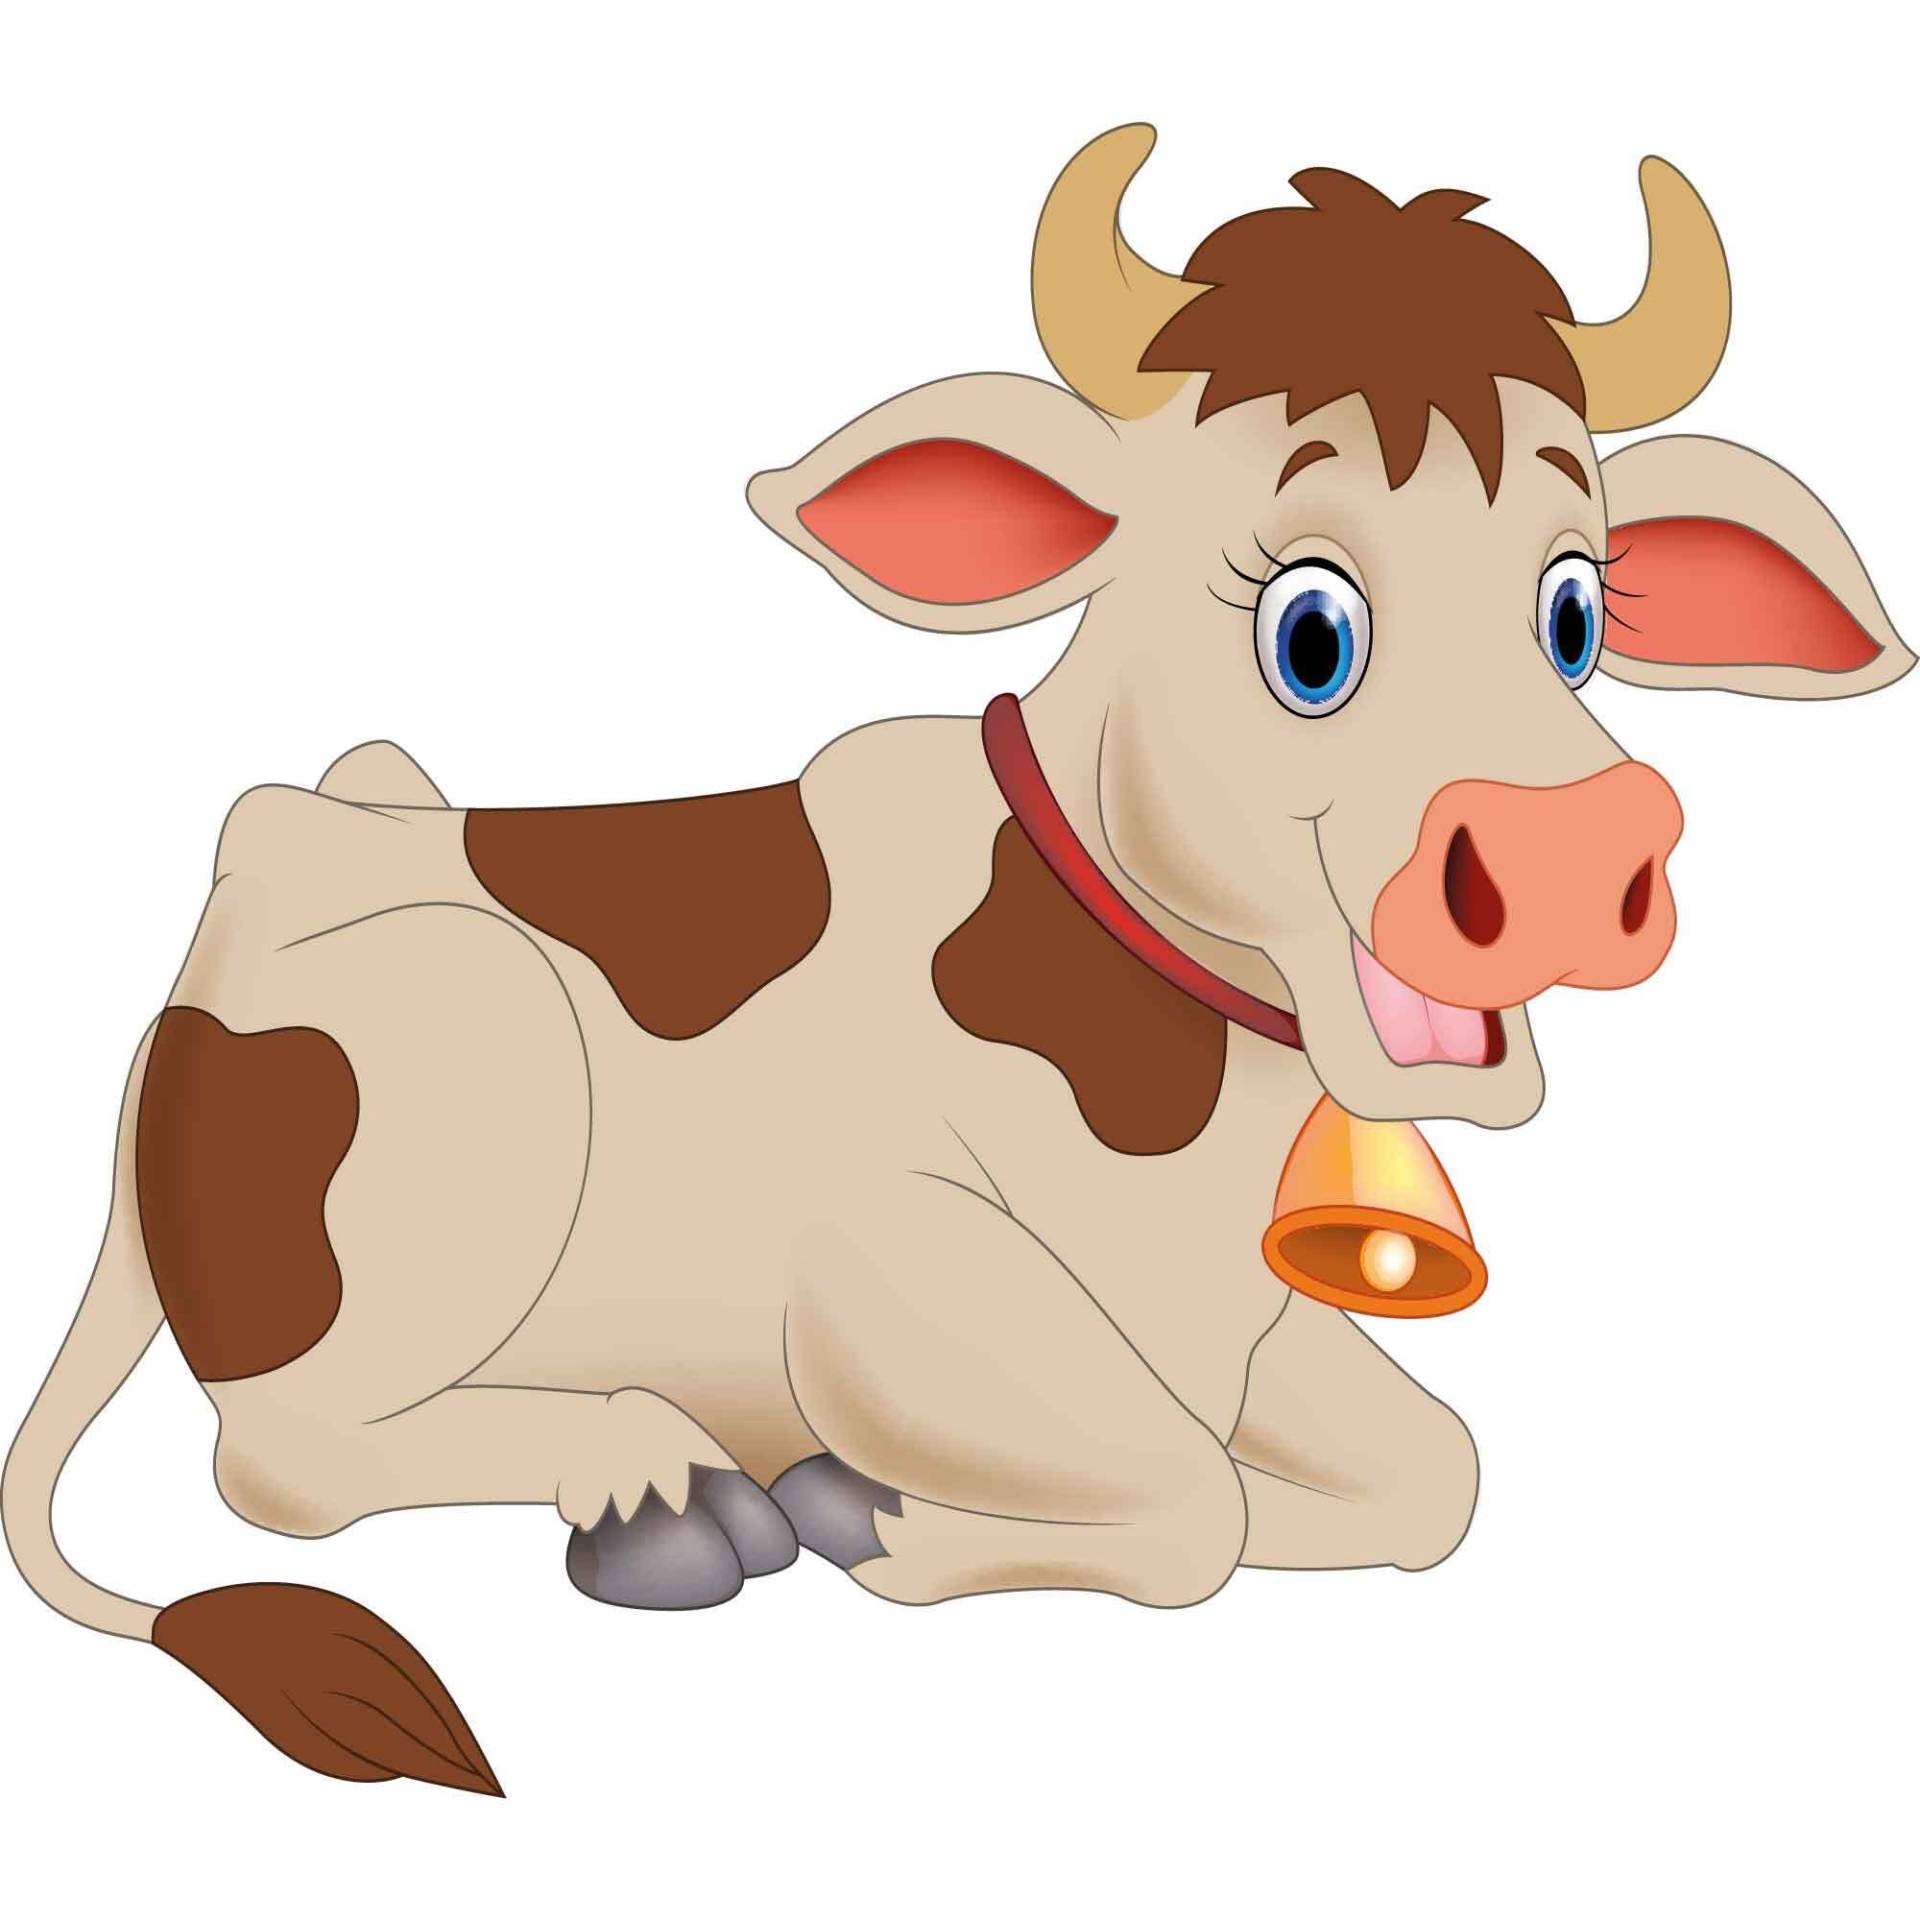 kleberio Aufkleber Kuh wasserfest Familie Aufkleber Bauernhof lächeln Tier Flecken Sticker Milch Kinder Deko Autoaufkleber 12 x 9 cm von kleberio